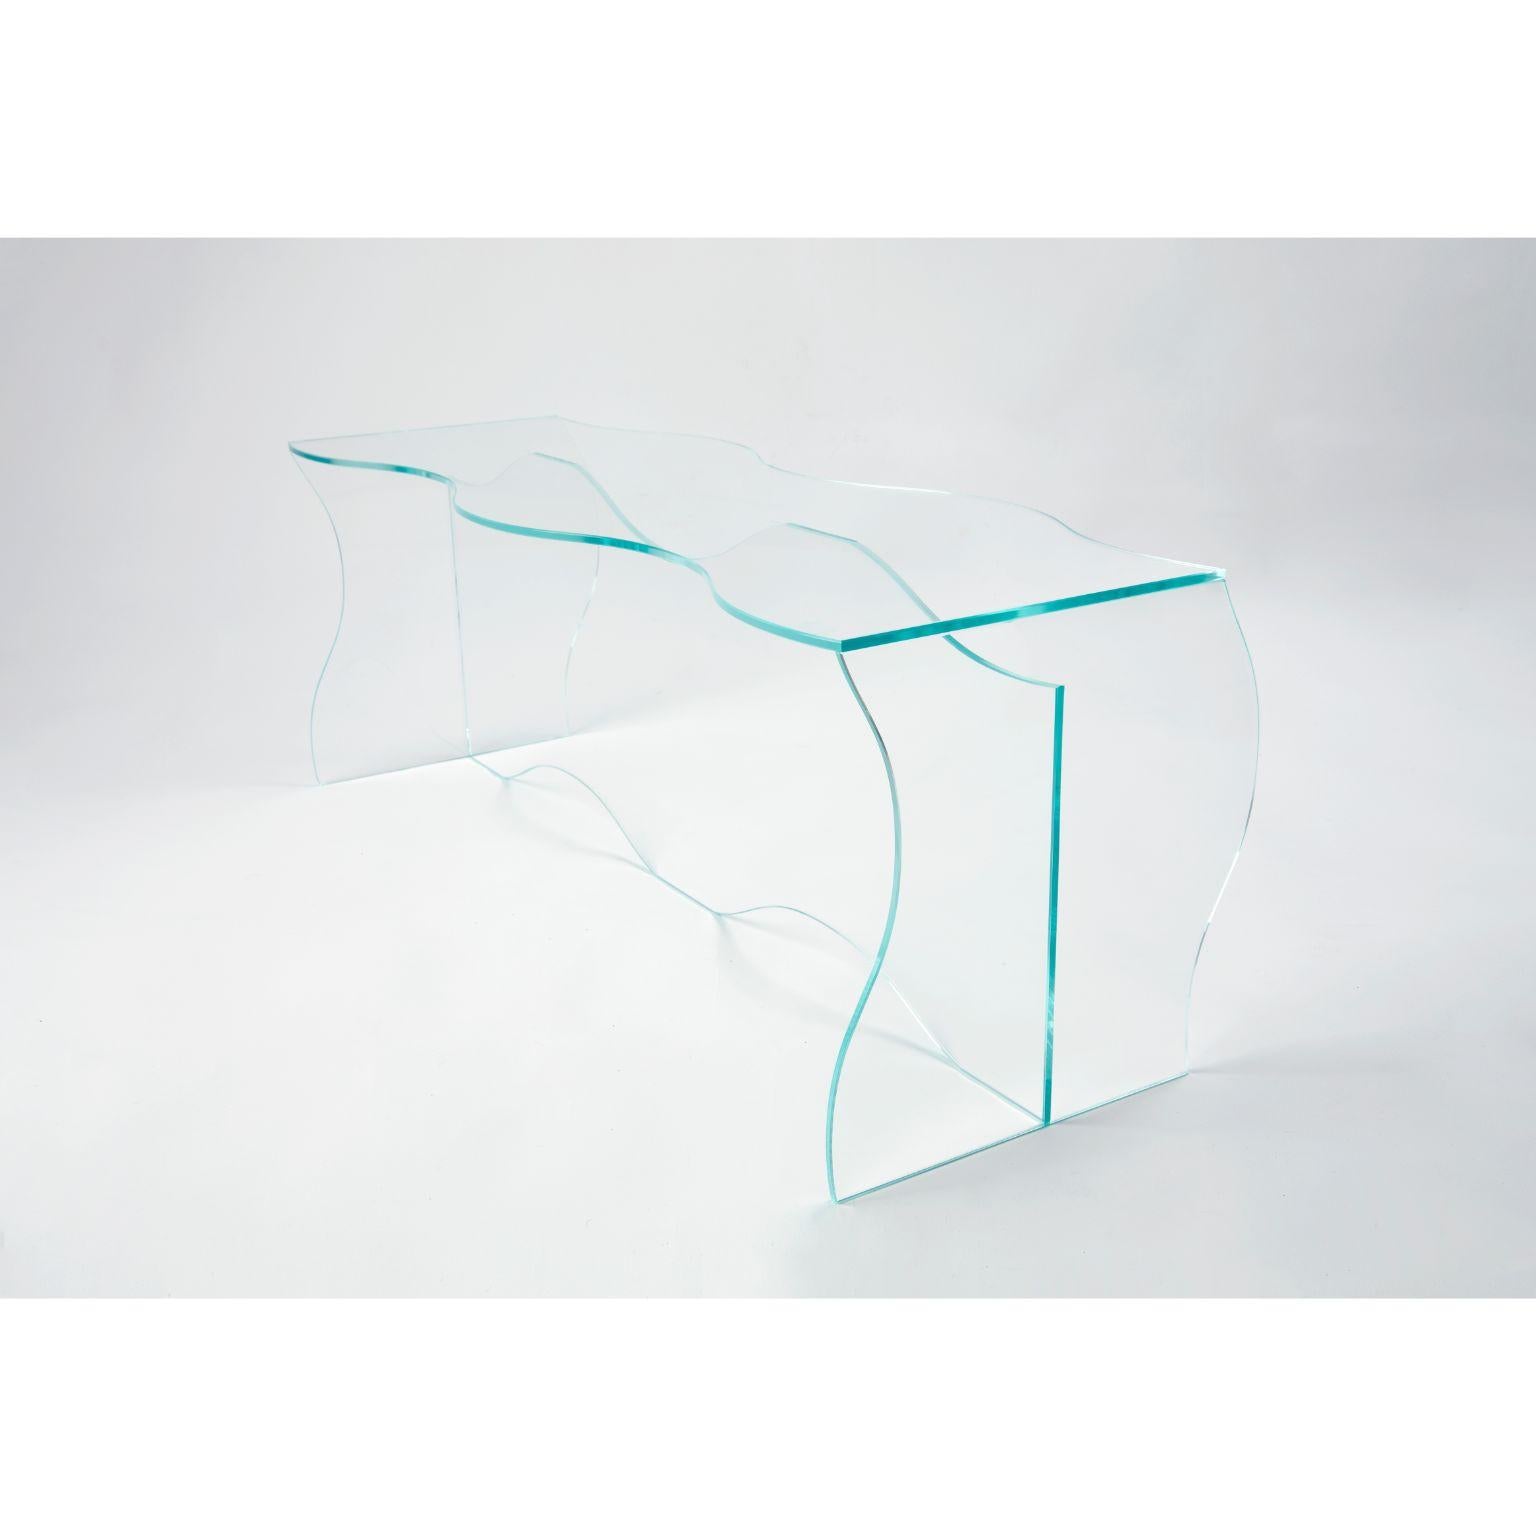 Table basse en verre transparent Wave sculptée par Studio-Chacha
Dimensions : 40 x 110 x 40 cm
Matériaux : Verre transparent 

Studio-Chacha est un studio de mobilier d'art haut de gamme fondé en 2017 qui crée une nouvelle esthétique avec une